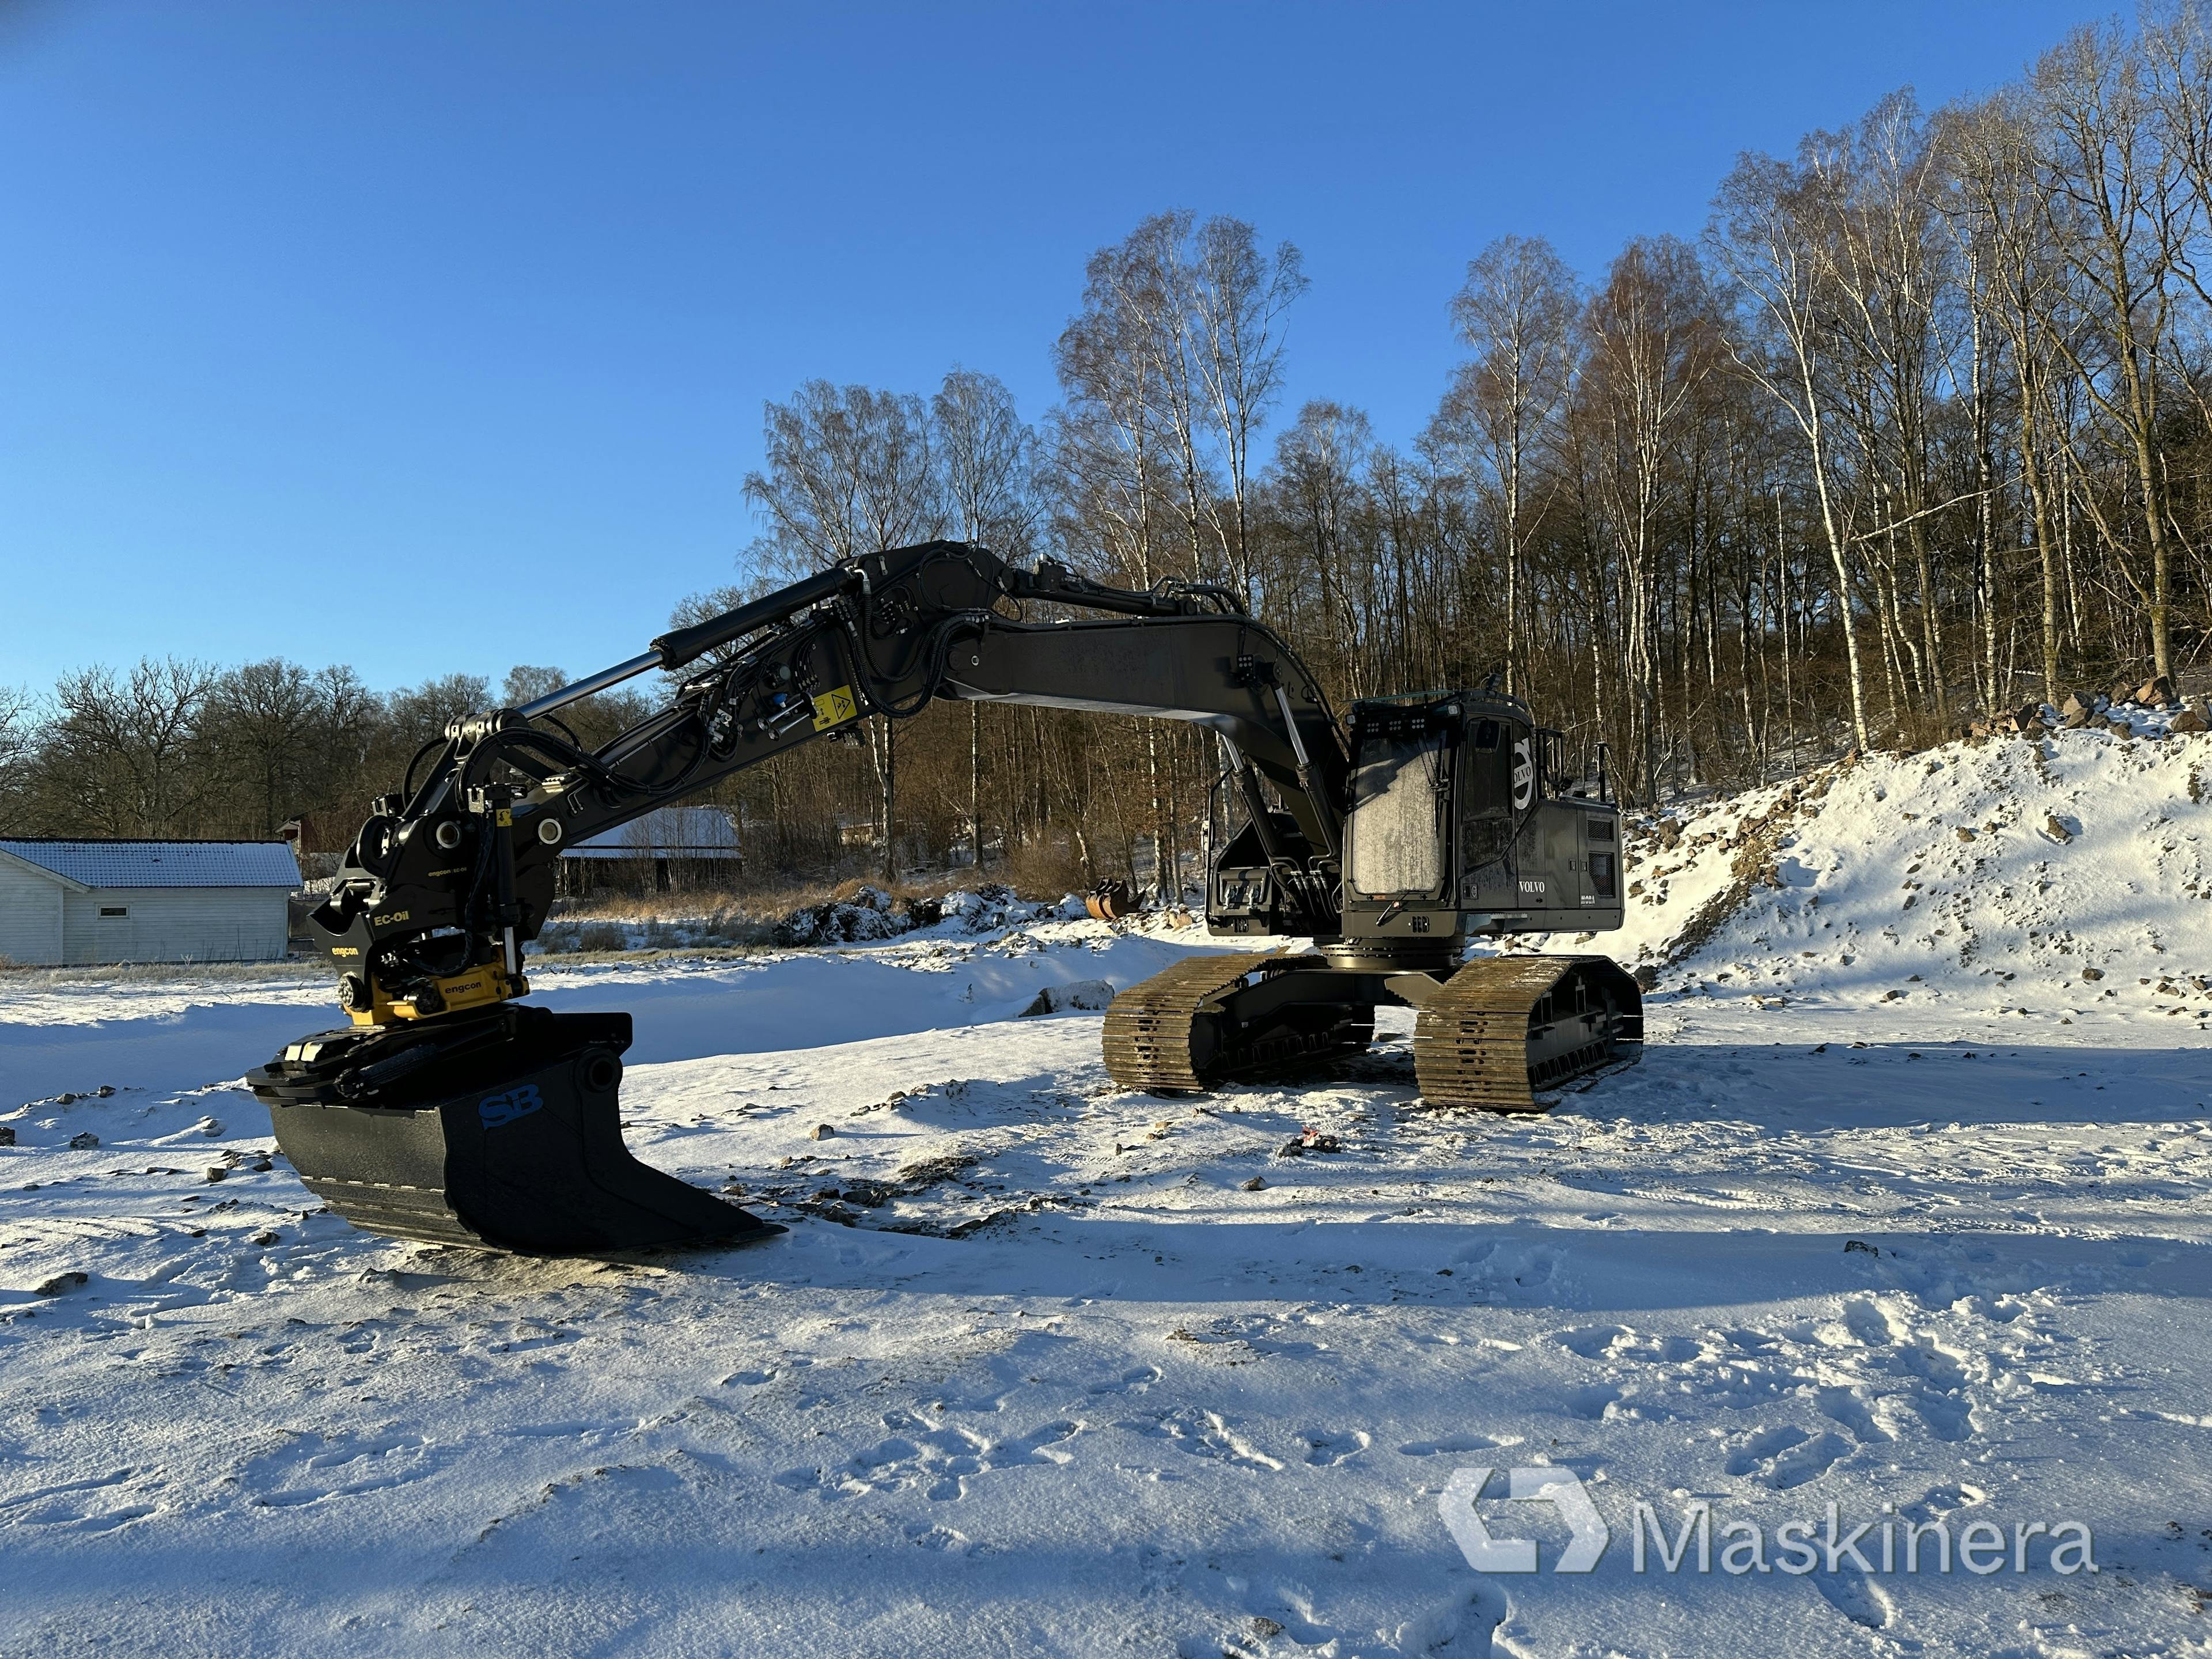 Excavator Volvo EC220EL